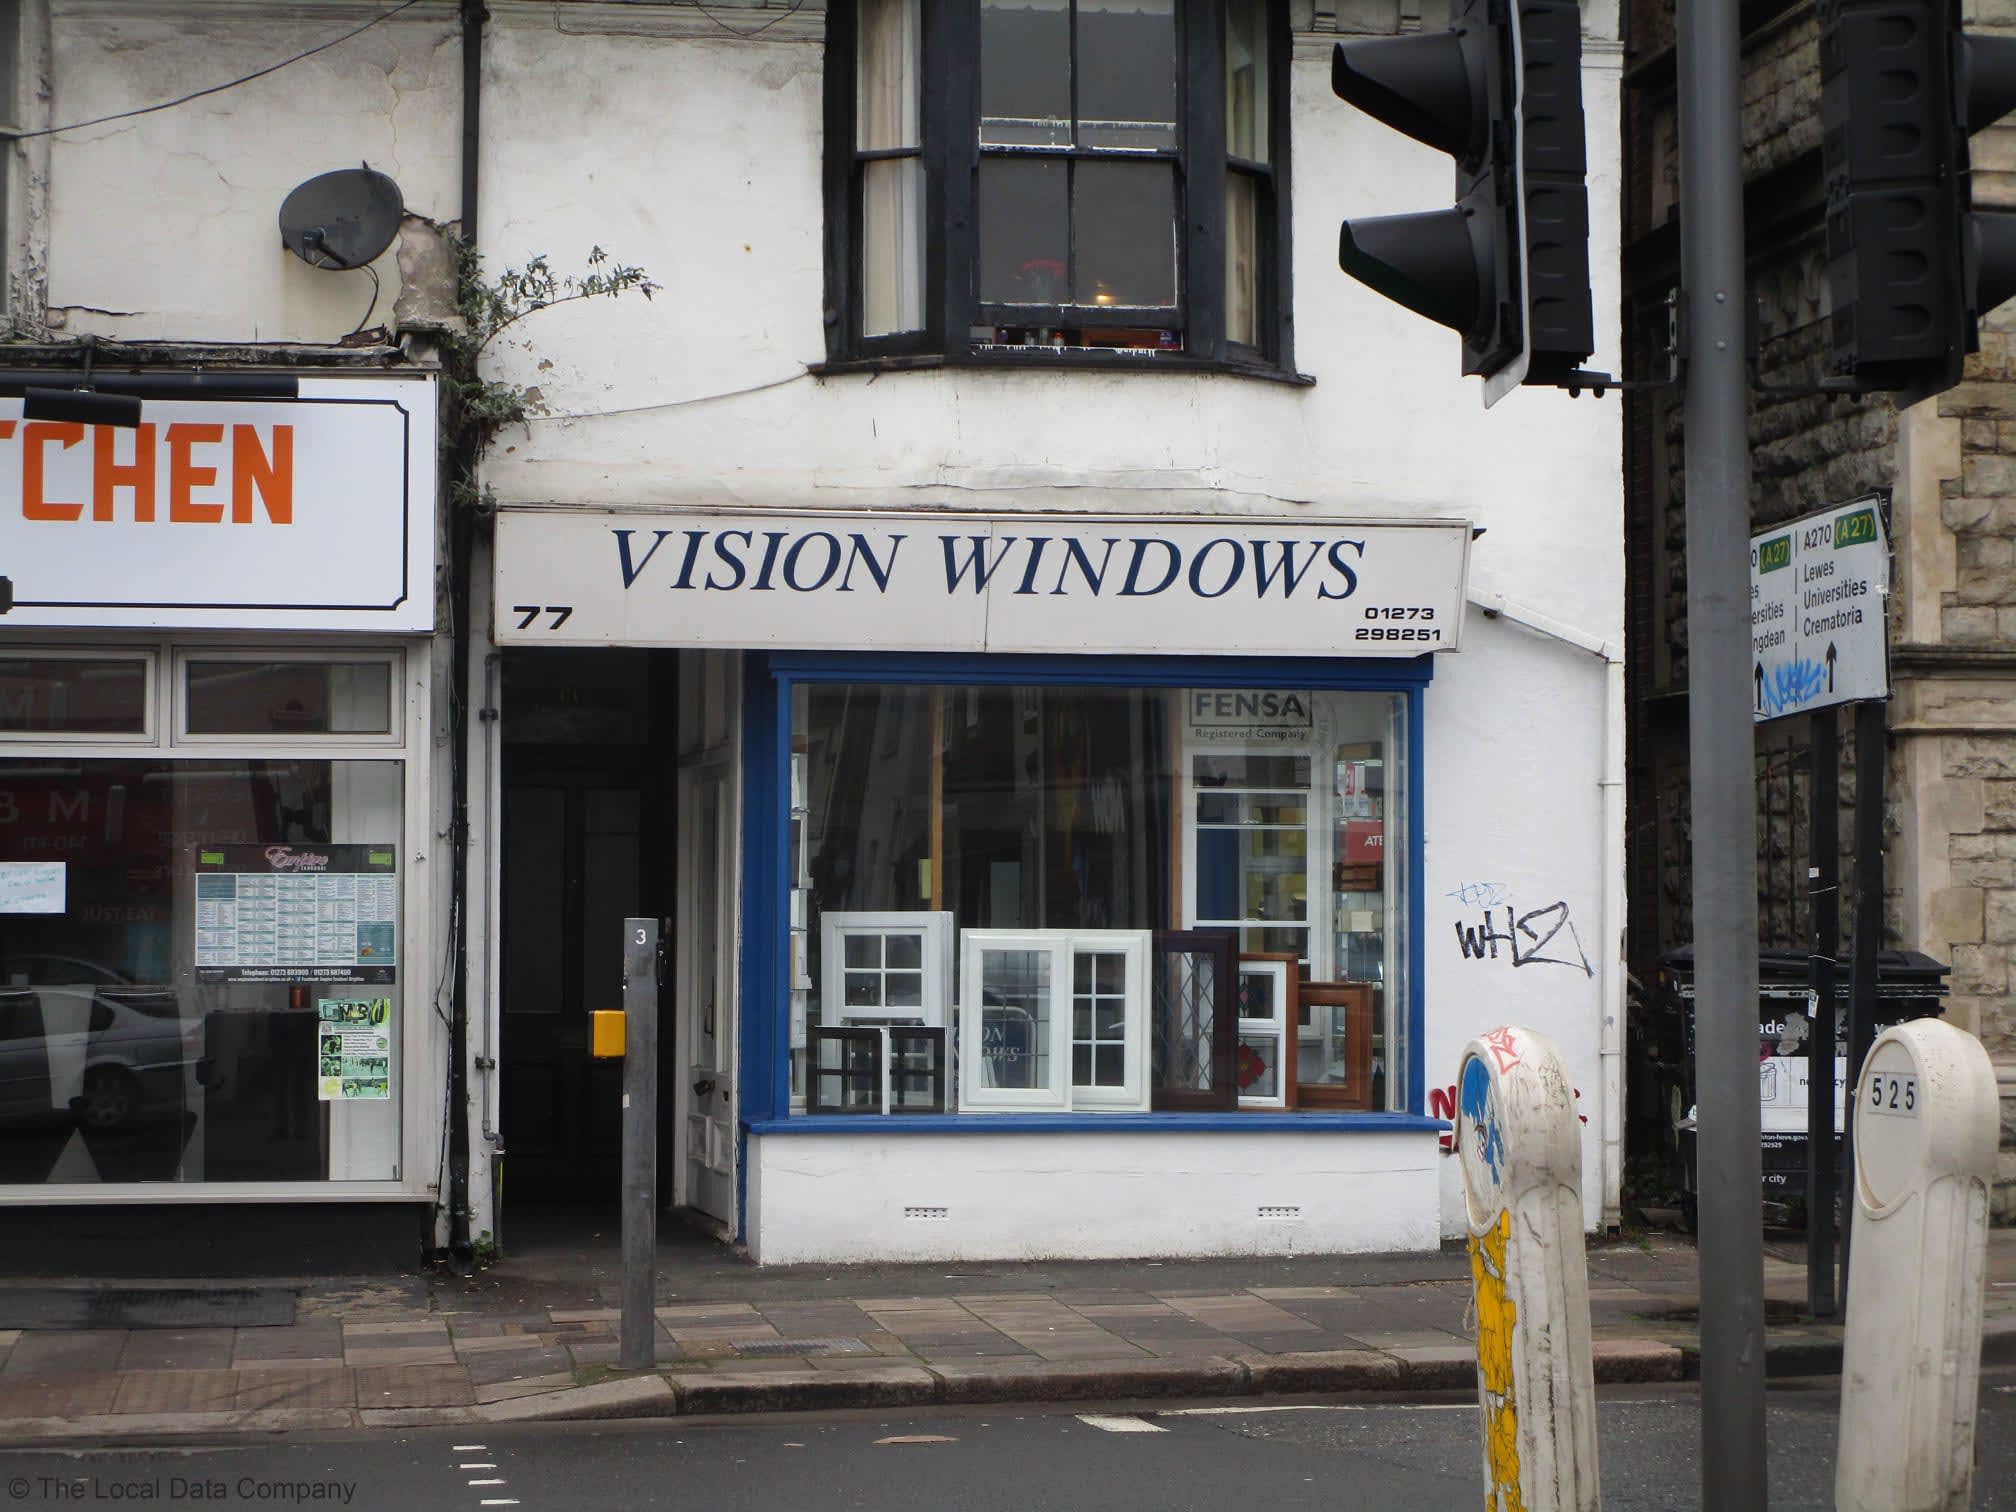 Images Vision Windows Brighton Ltd